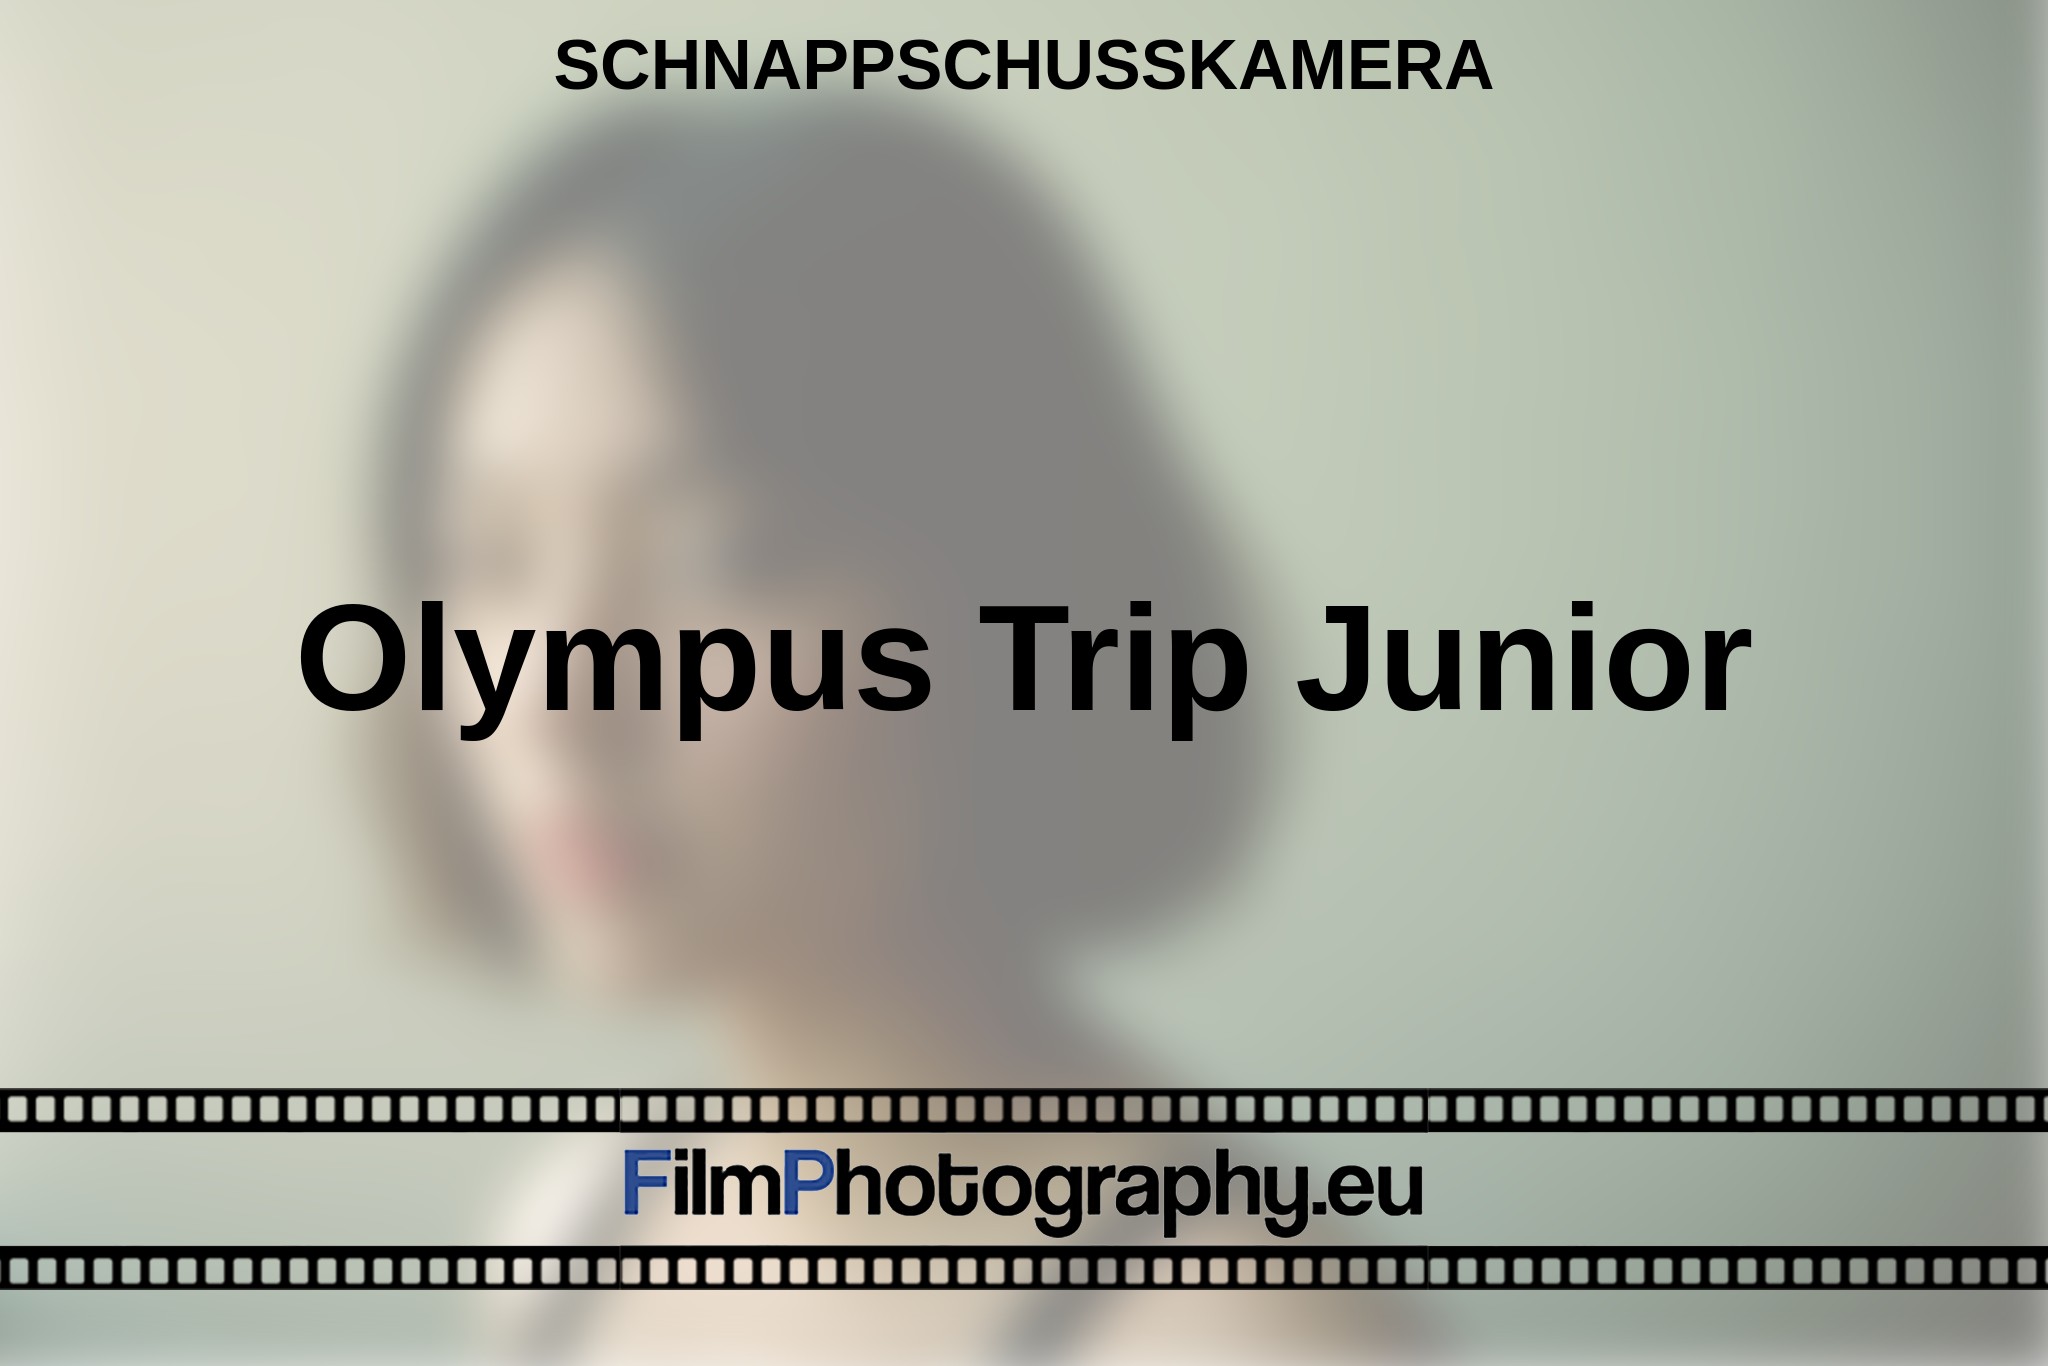 olympus-trip-junior-schnappschusskamera-bnv.jpg